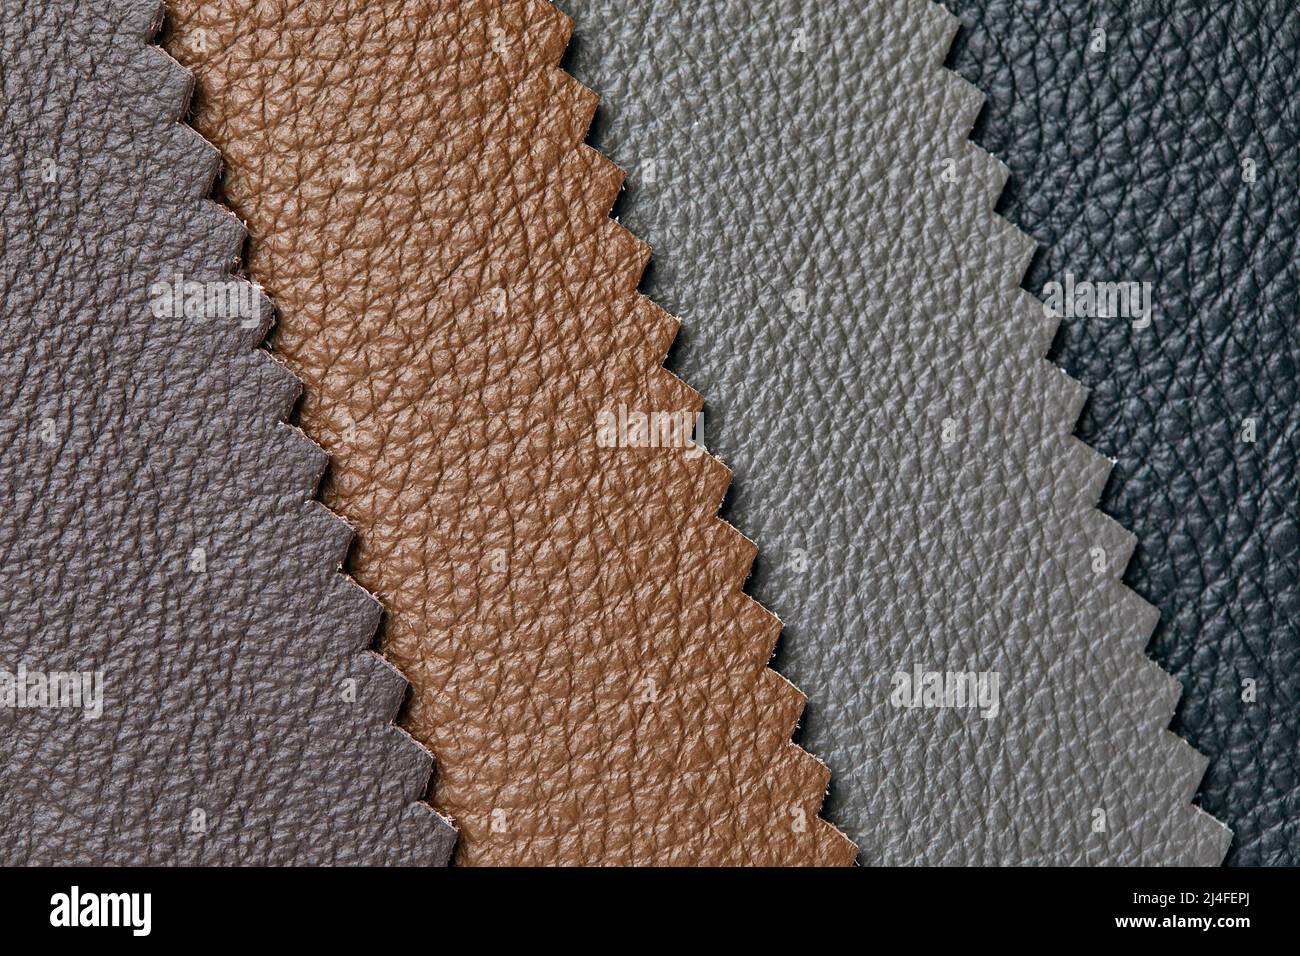 Muestras de cuero beige, marrón, gris negro. Artesanía y artesanía de cuero. Vista desde arriba Foto de stock